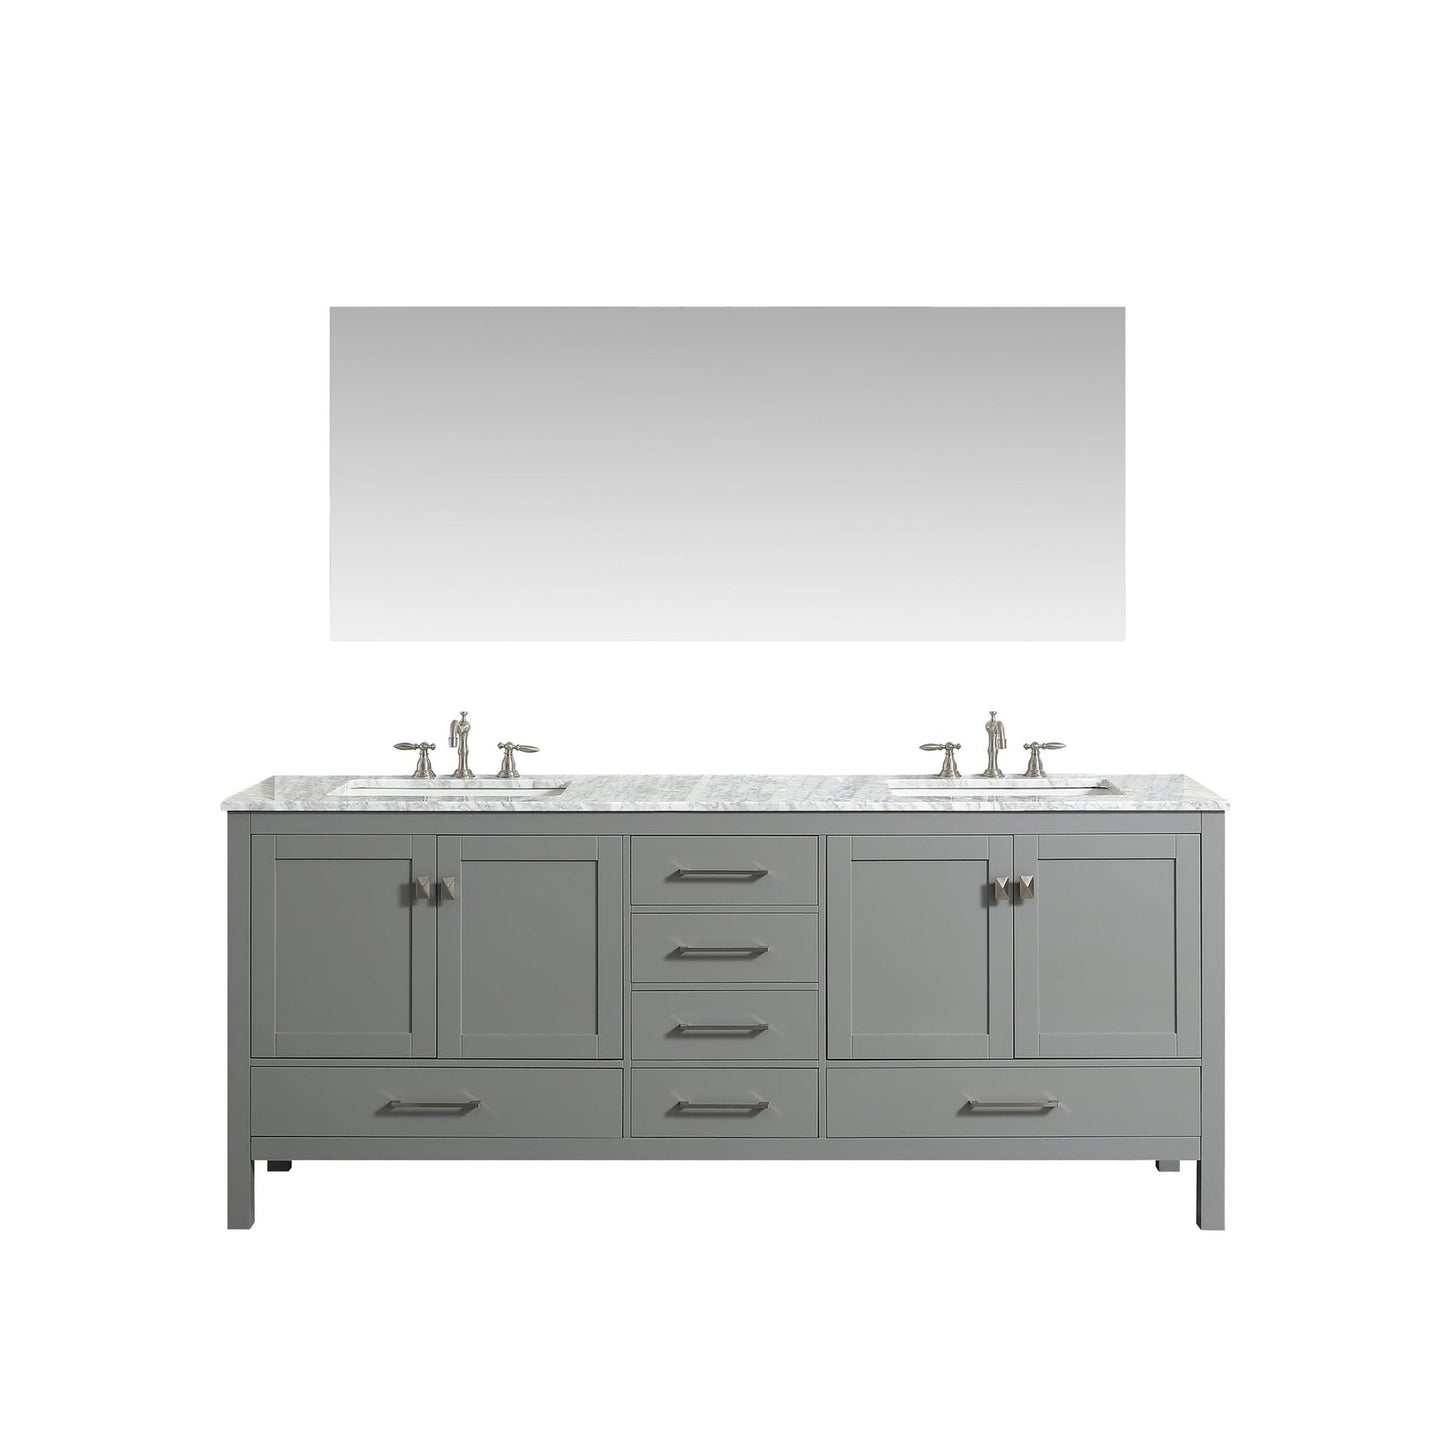 Eviva Aberdeen 84" x 34" Gray Freestanding Bathroom Vanity With Double Undermount Sink